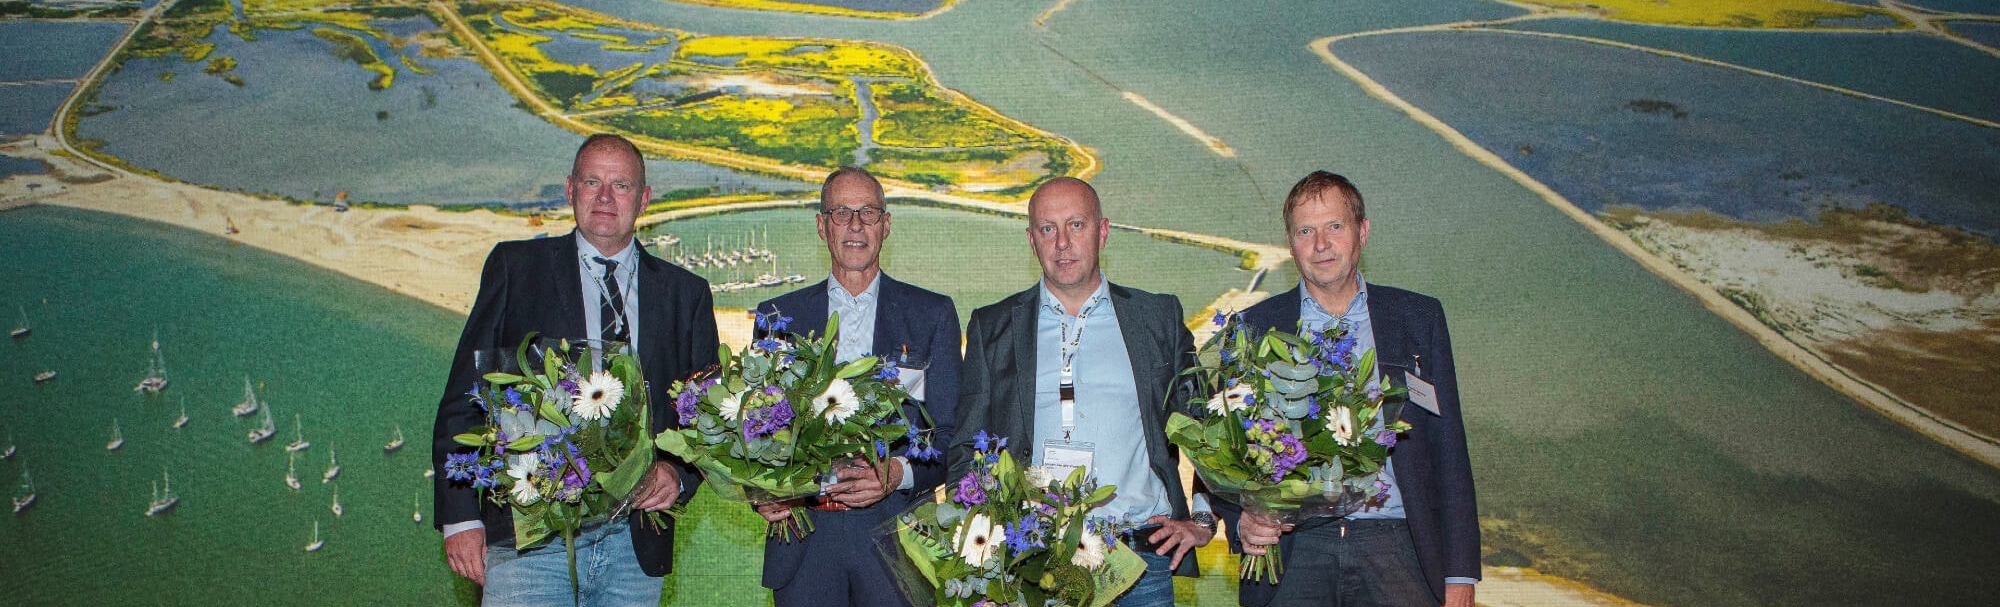 Project Marker Wadden wint Agemaprijs